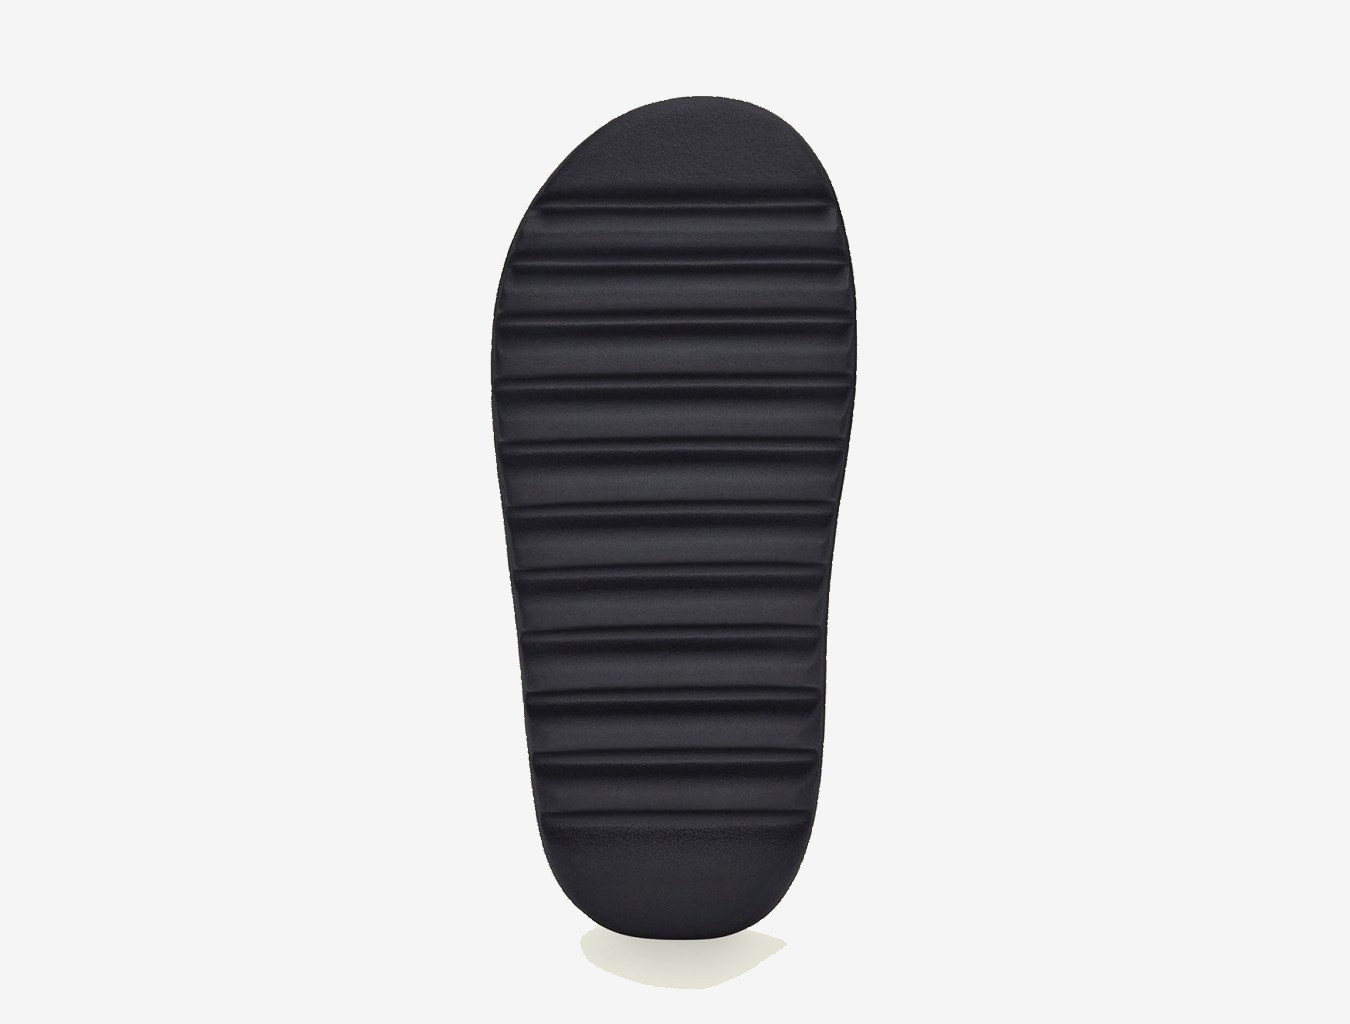 adidas Yeezy Slide 'Onyx'